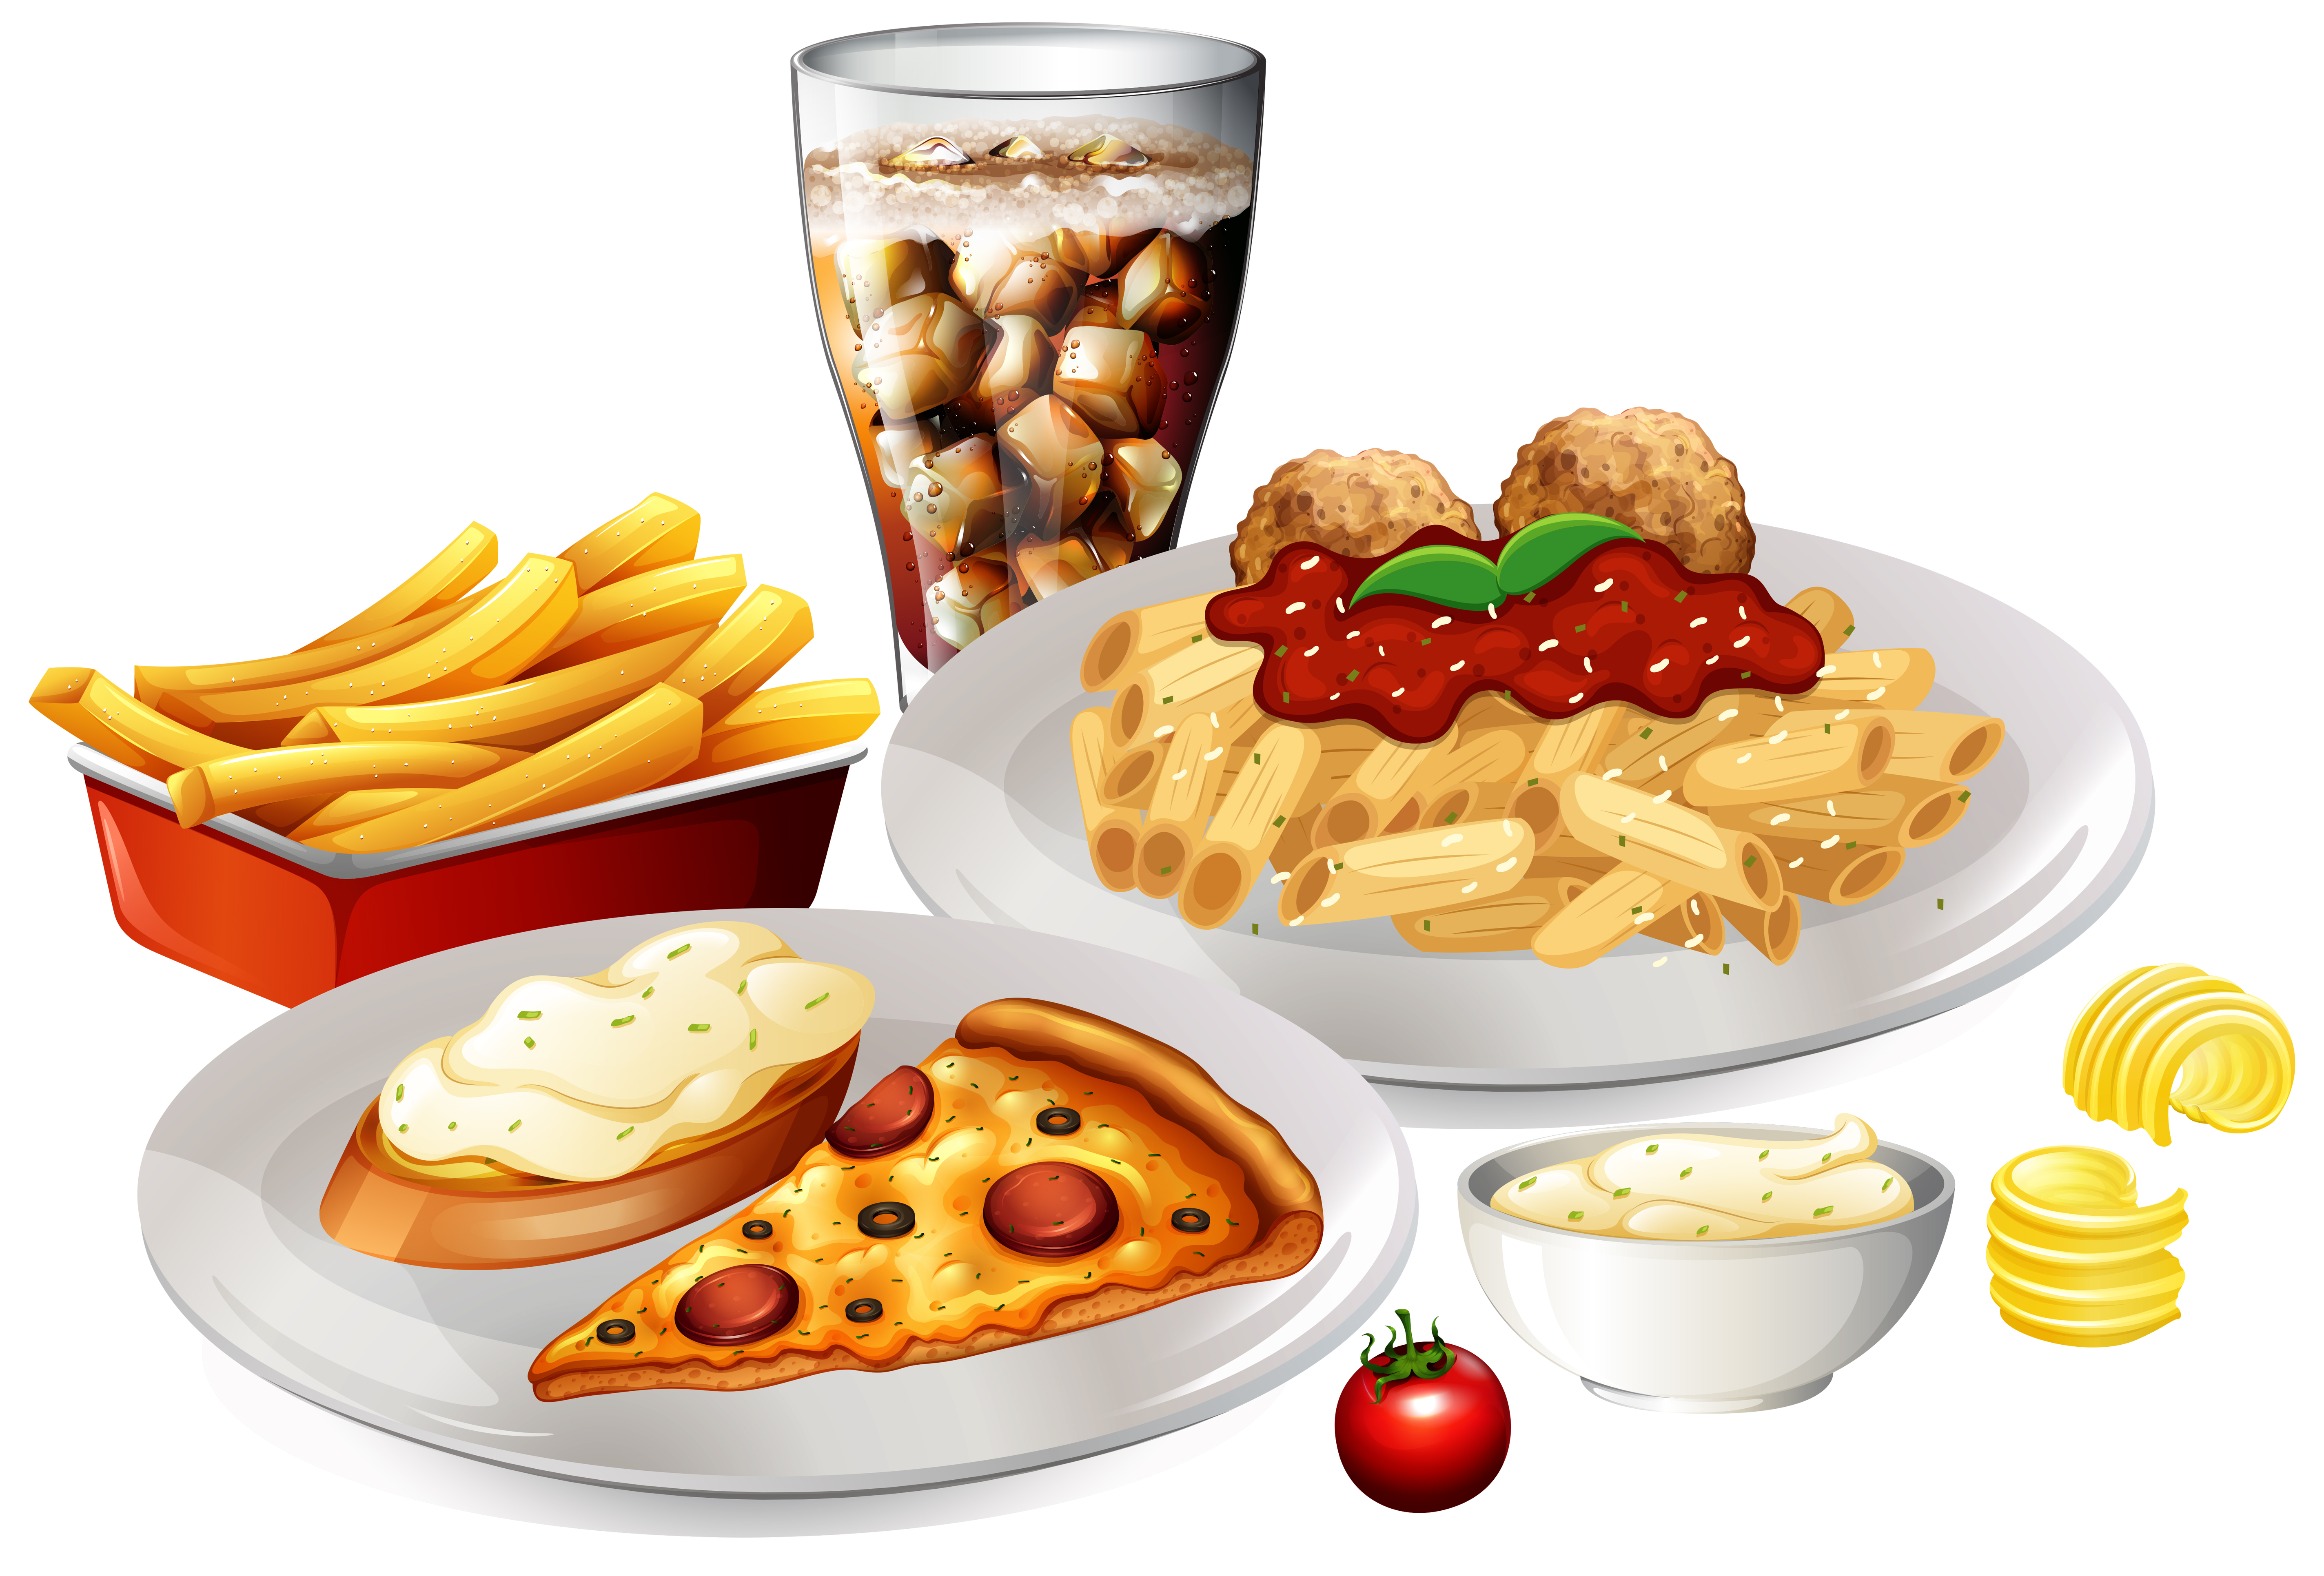 A Set of Delicious Food 303895 Download Free Vectors Clipart Graphics & Vector Art